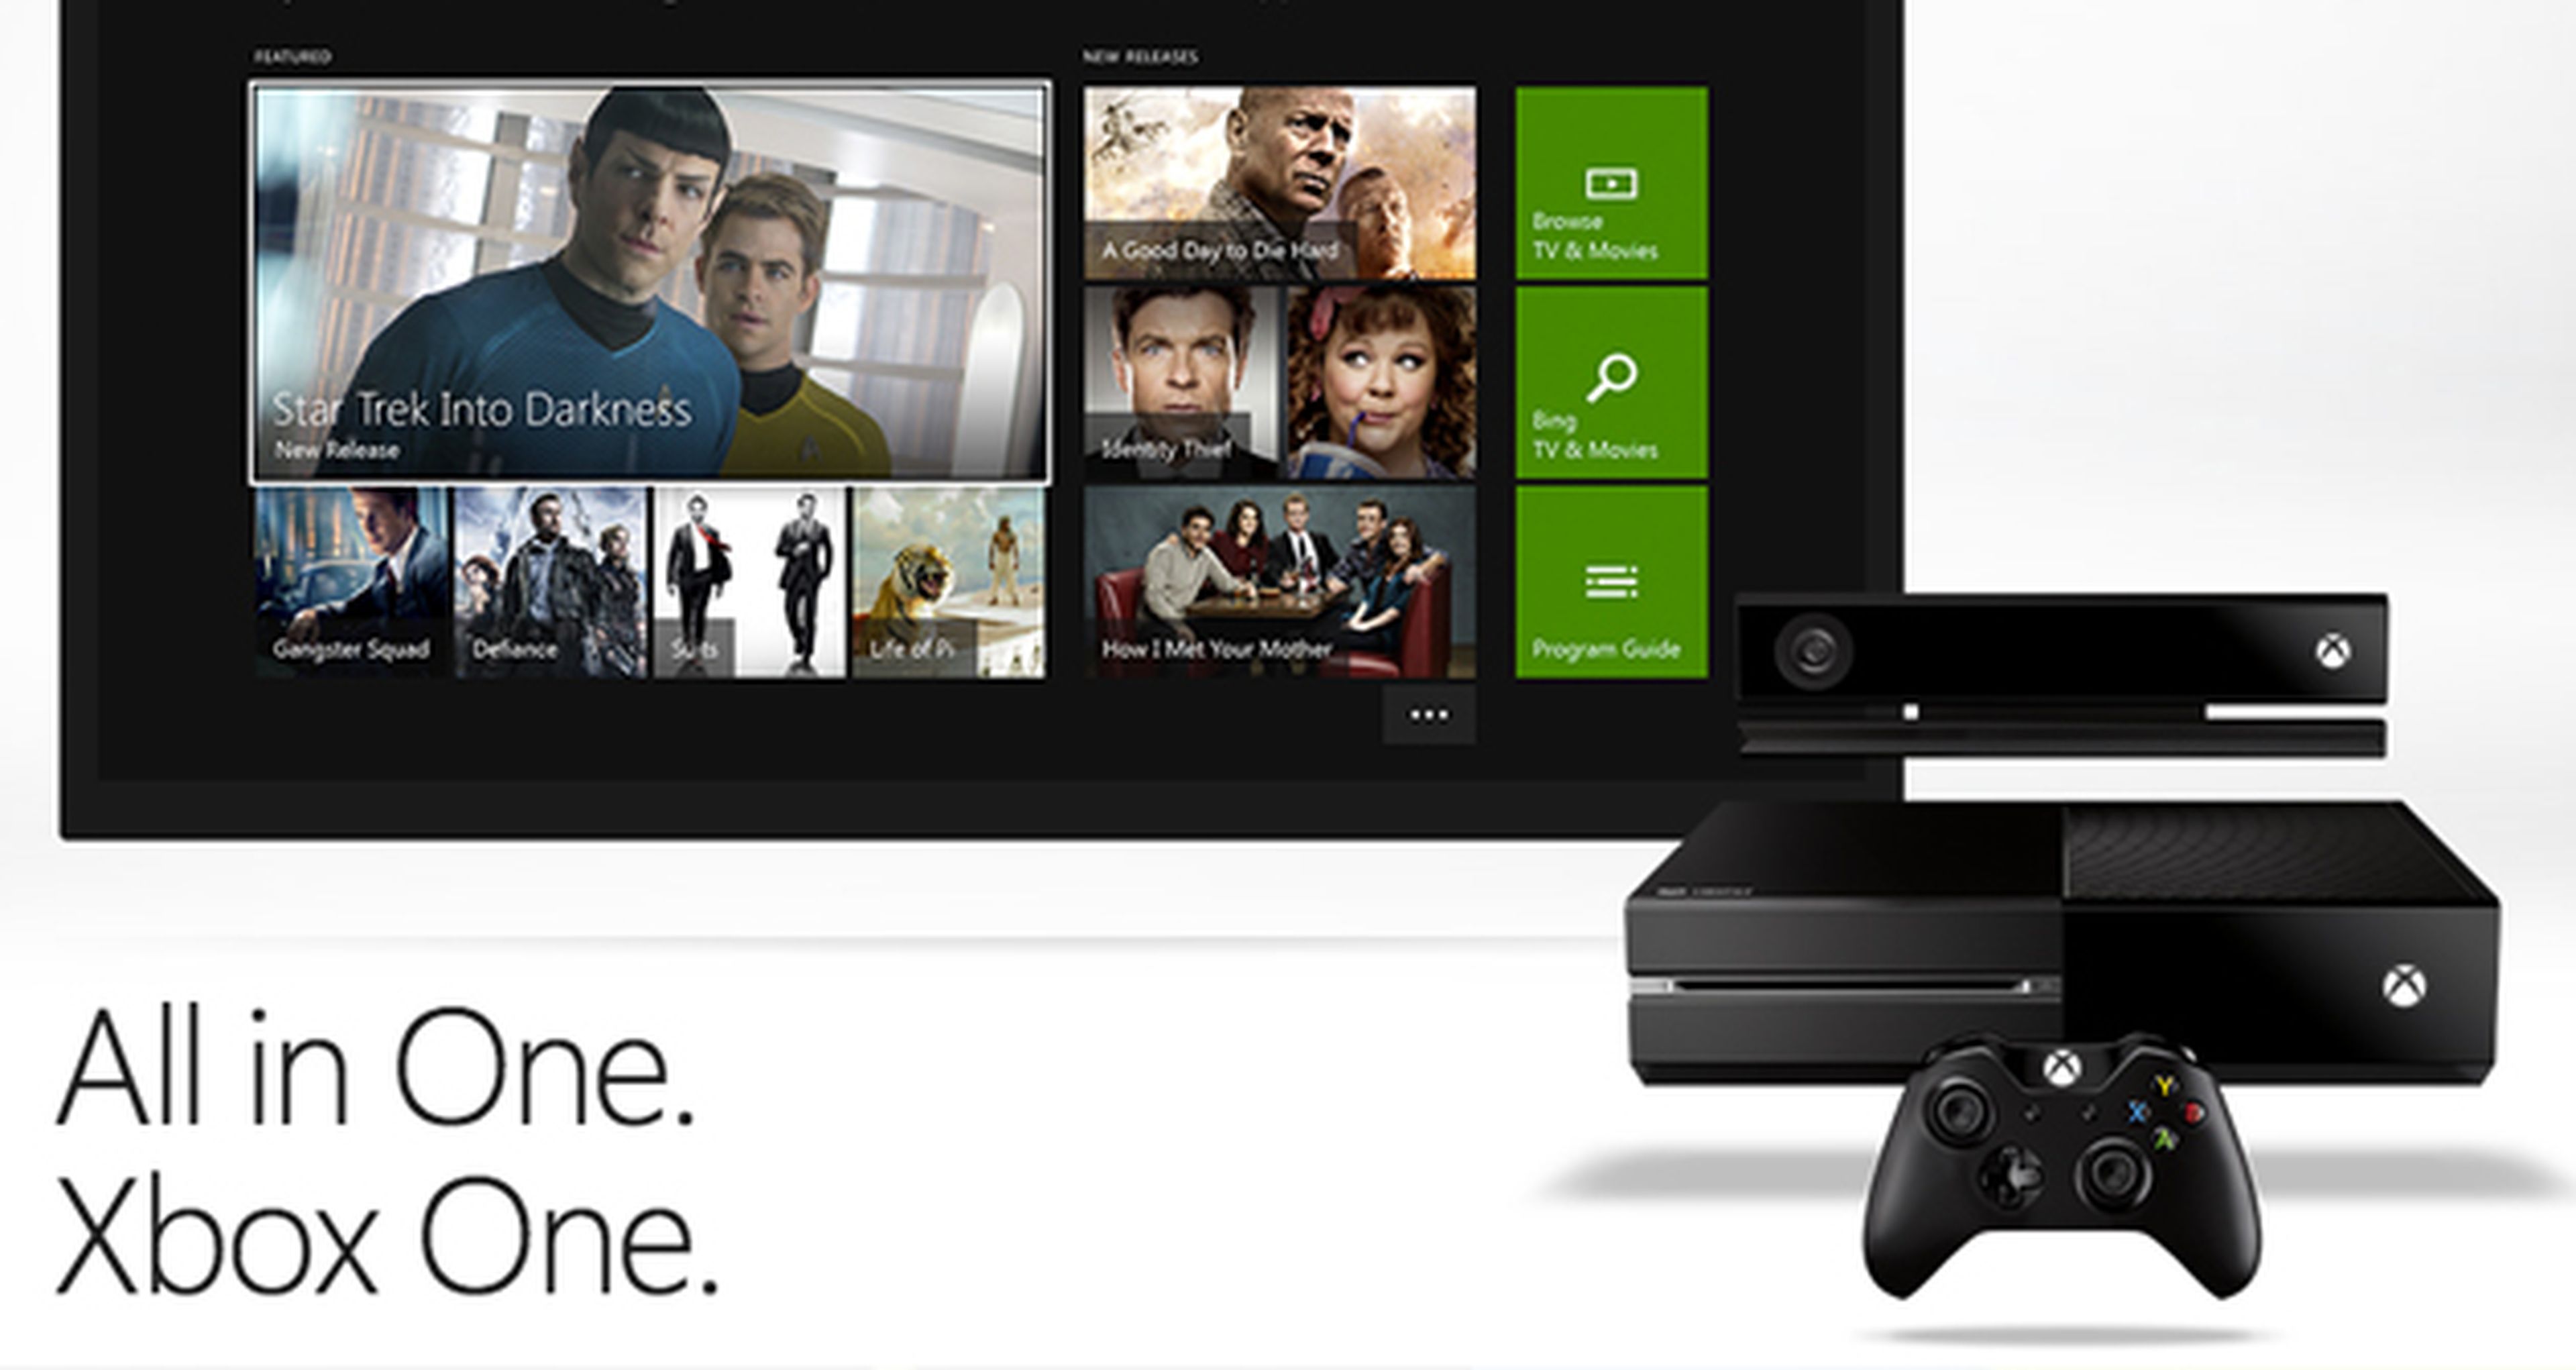 Microsoft lanzará su propia programación de TV en 2014